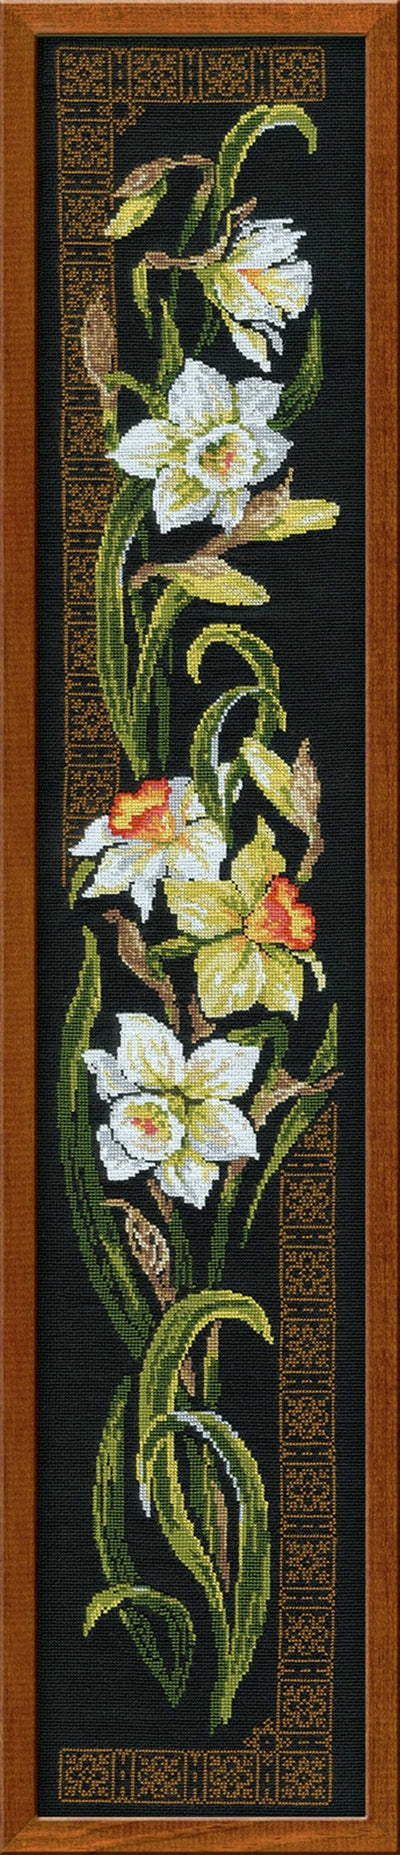 Riolis Cross Stitch Kit - Daffodils